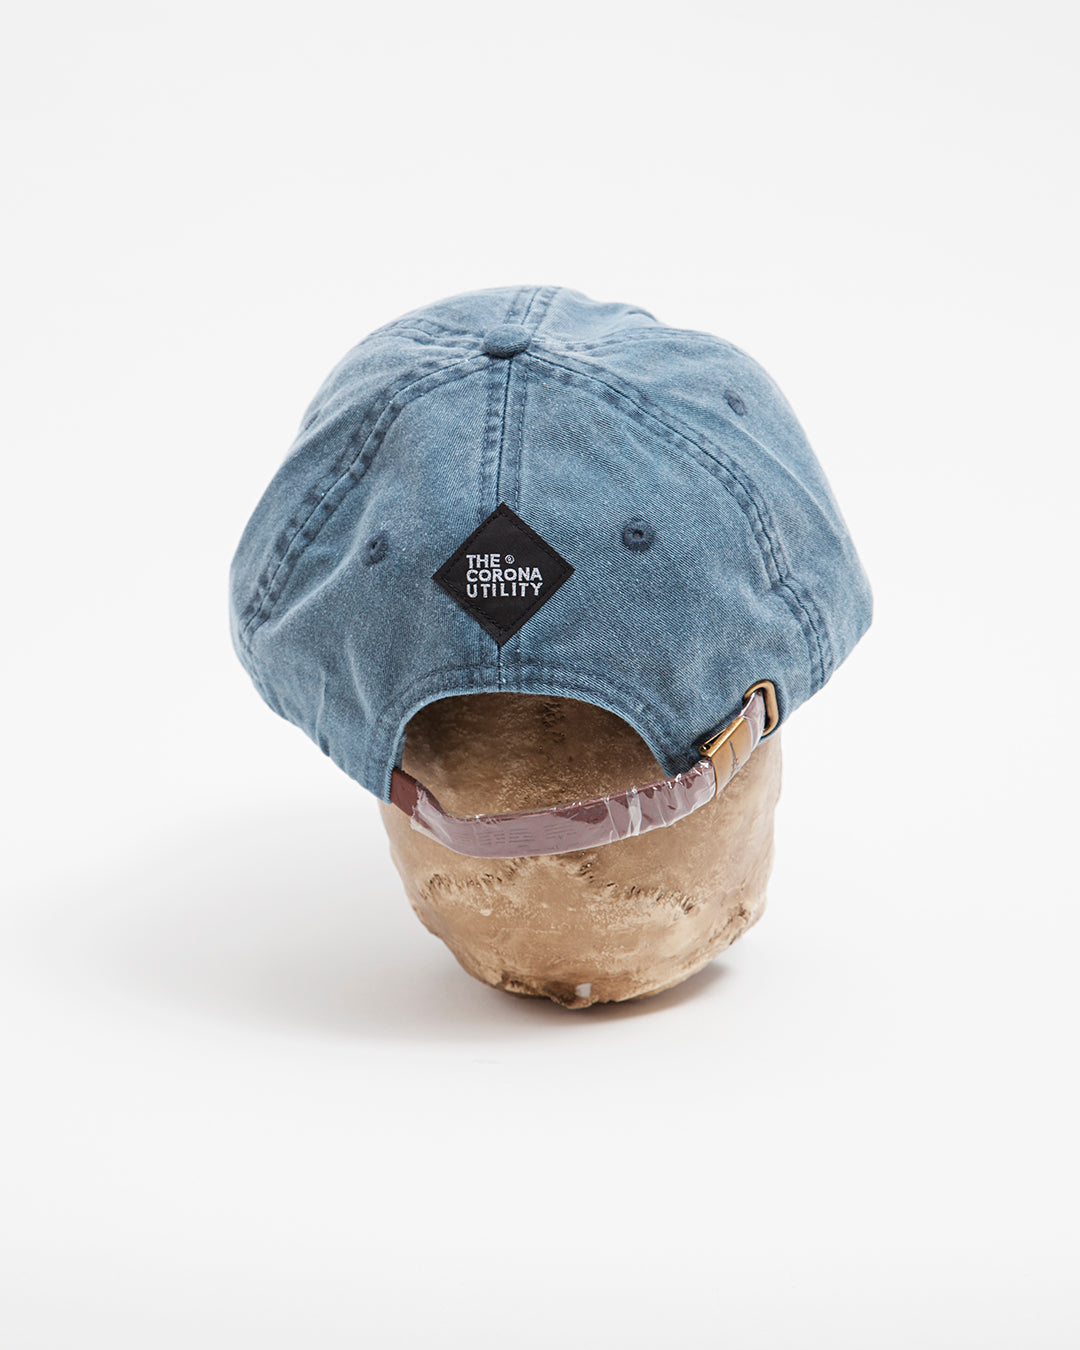 THE CORONA UTILITY・CORONA LOGO EMBROIDERY CAP / Blue × Saxe Embroidery